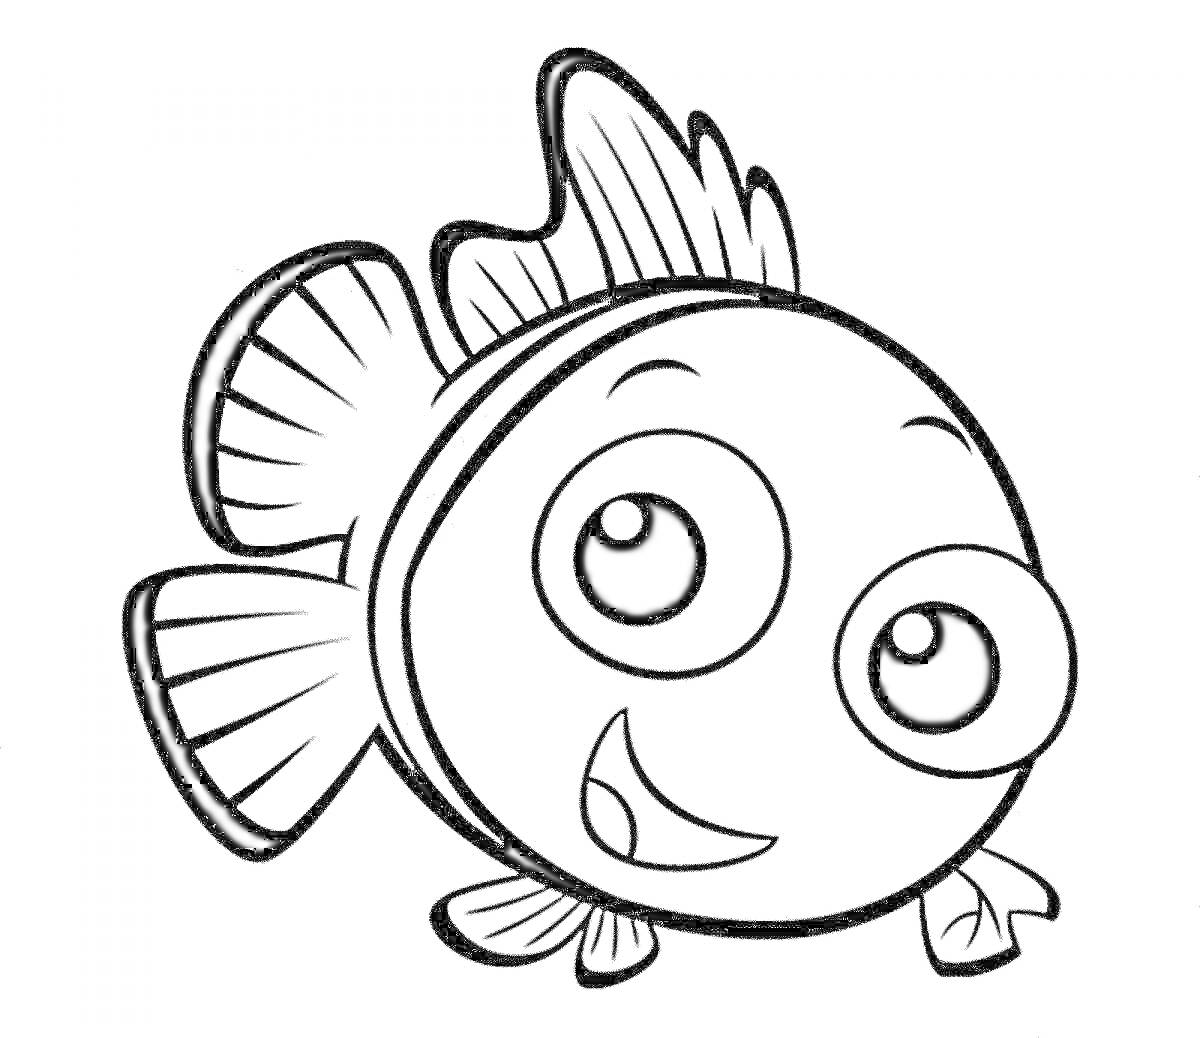 Раскраска Раскраска с улыбающейся рыбкой с большими глазами и плавниками, крупный план